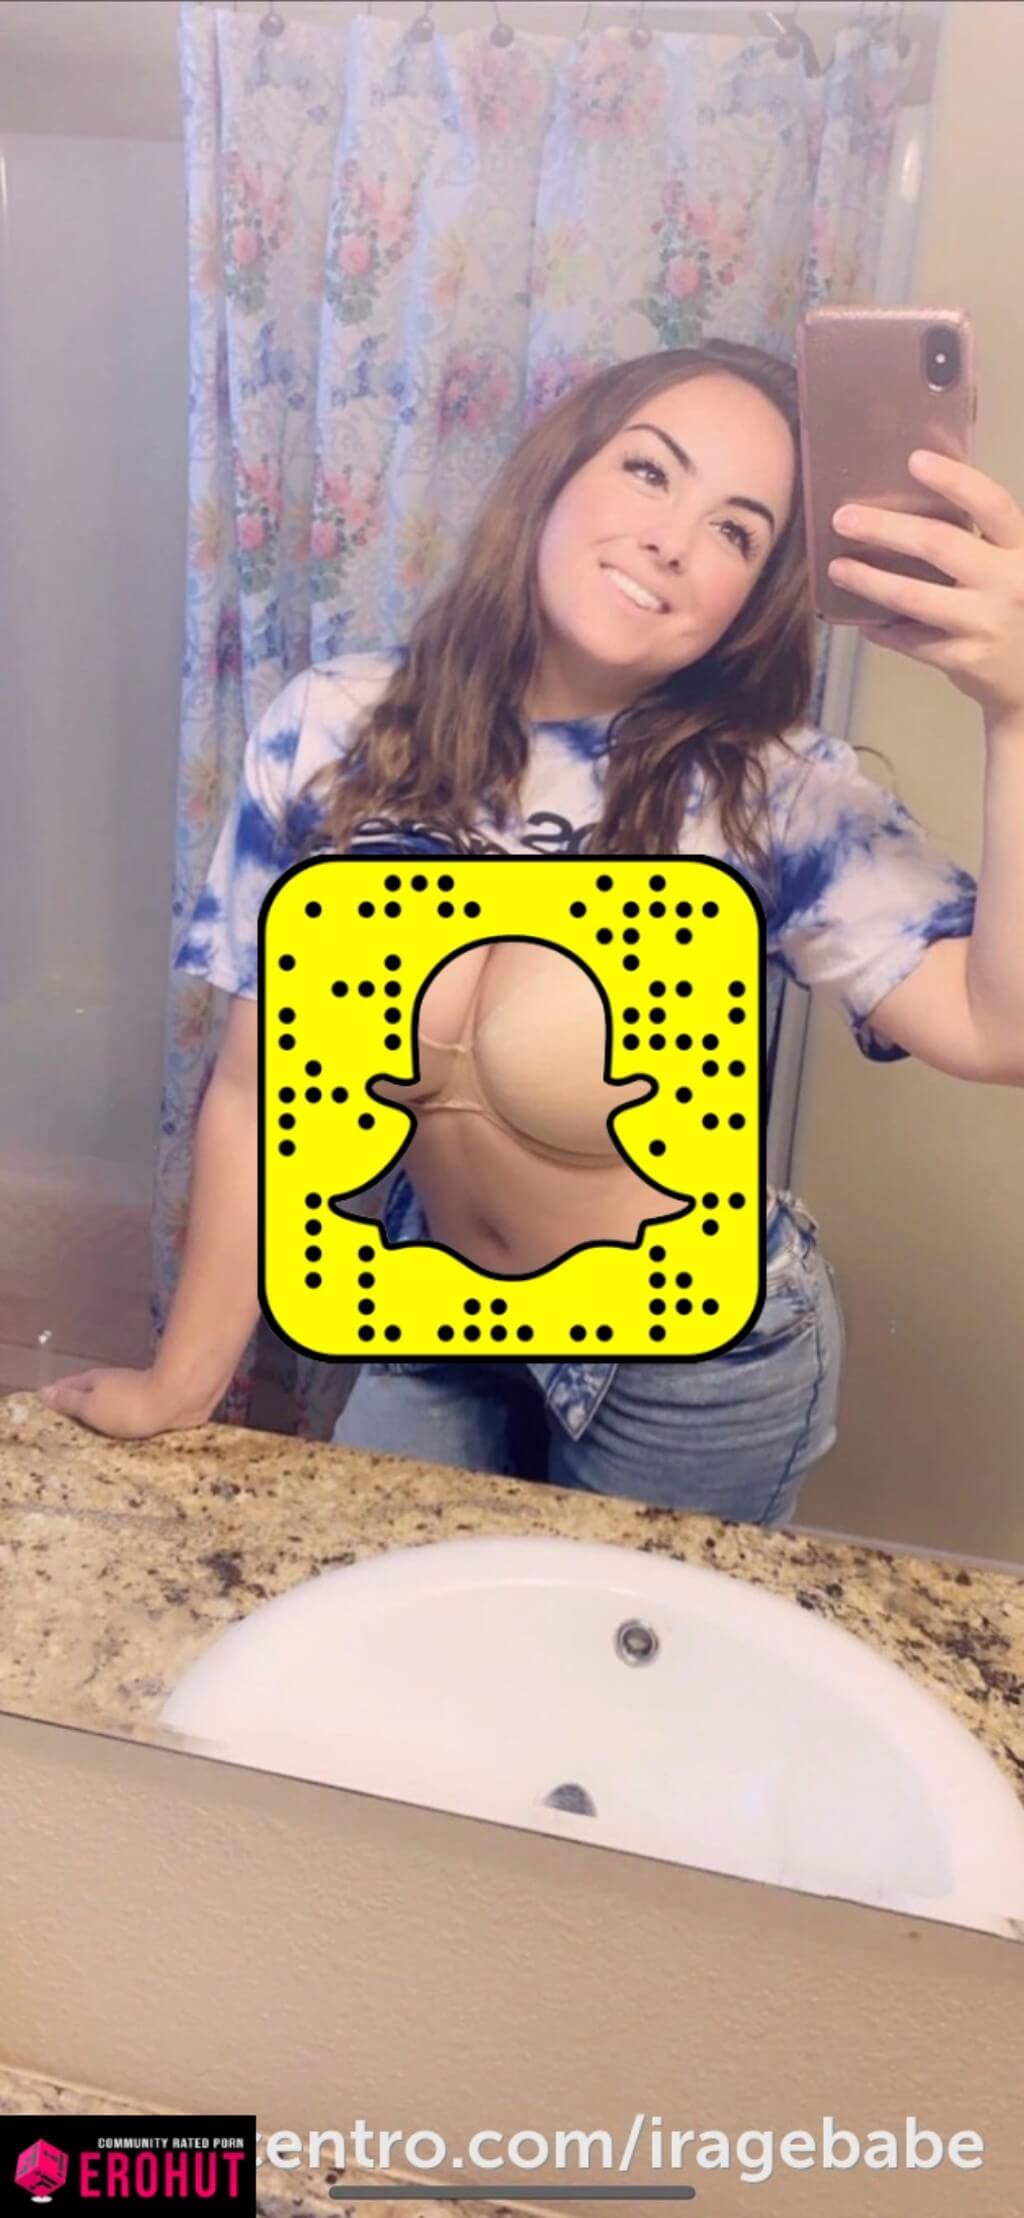 Video porn snapchat Snapchat teens